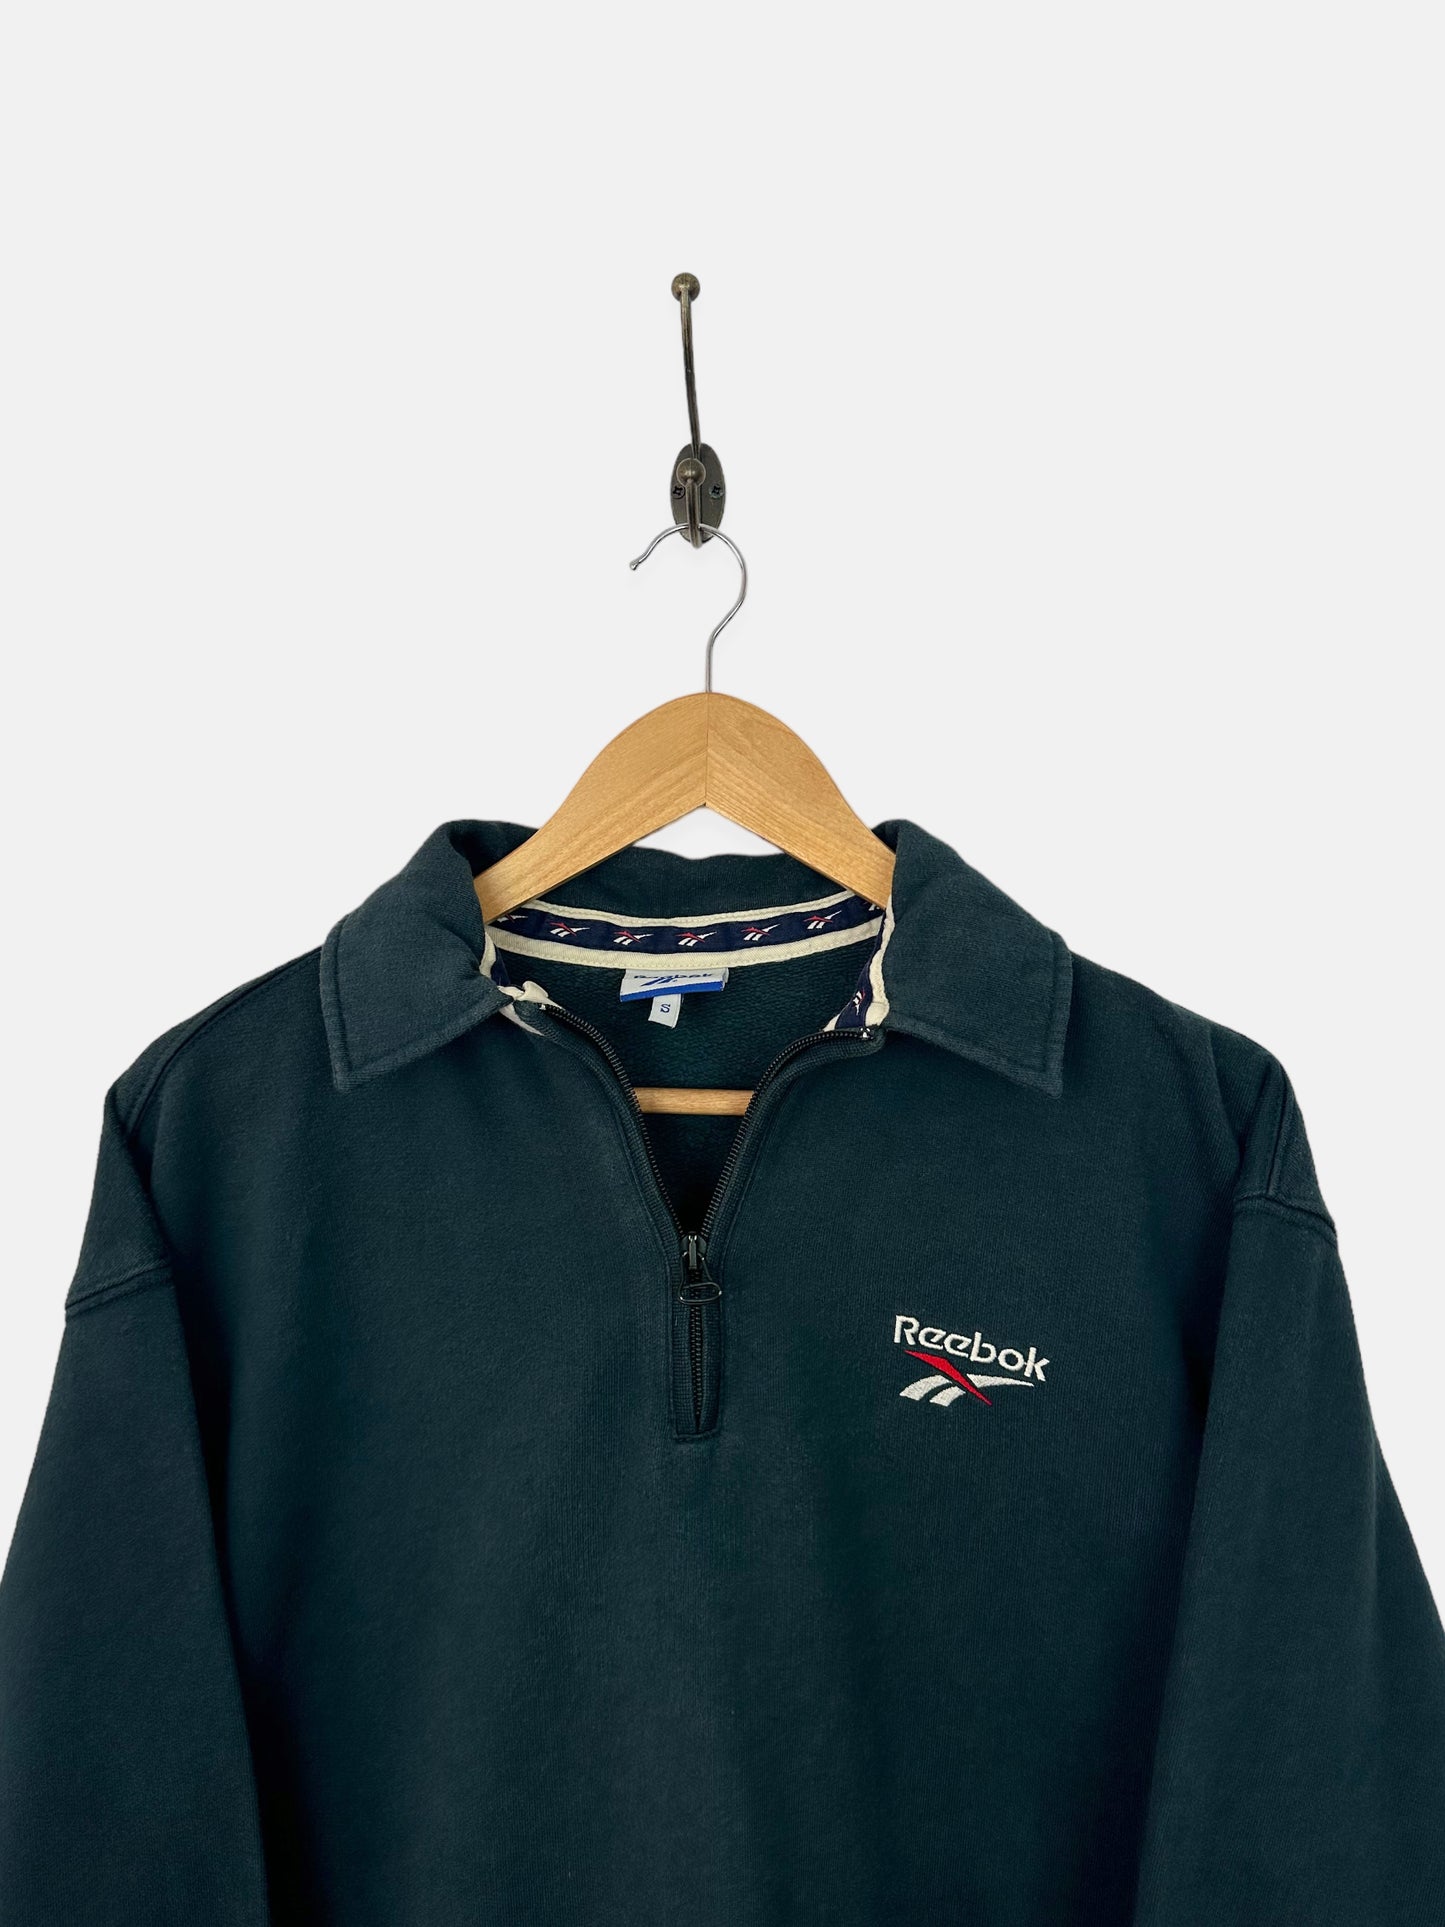 90's Reebok Embroidered Vintage Quarterzip Sweatshirt Size 10-12